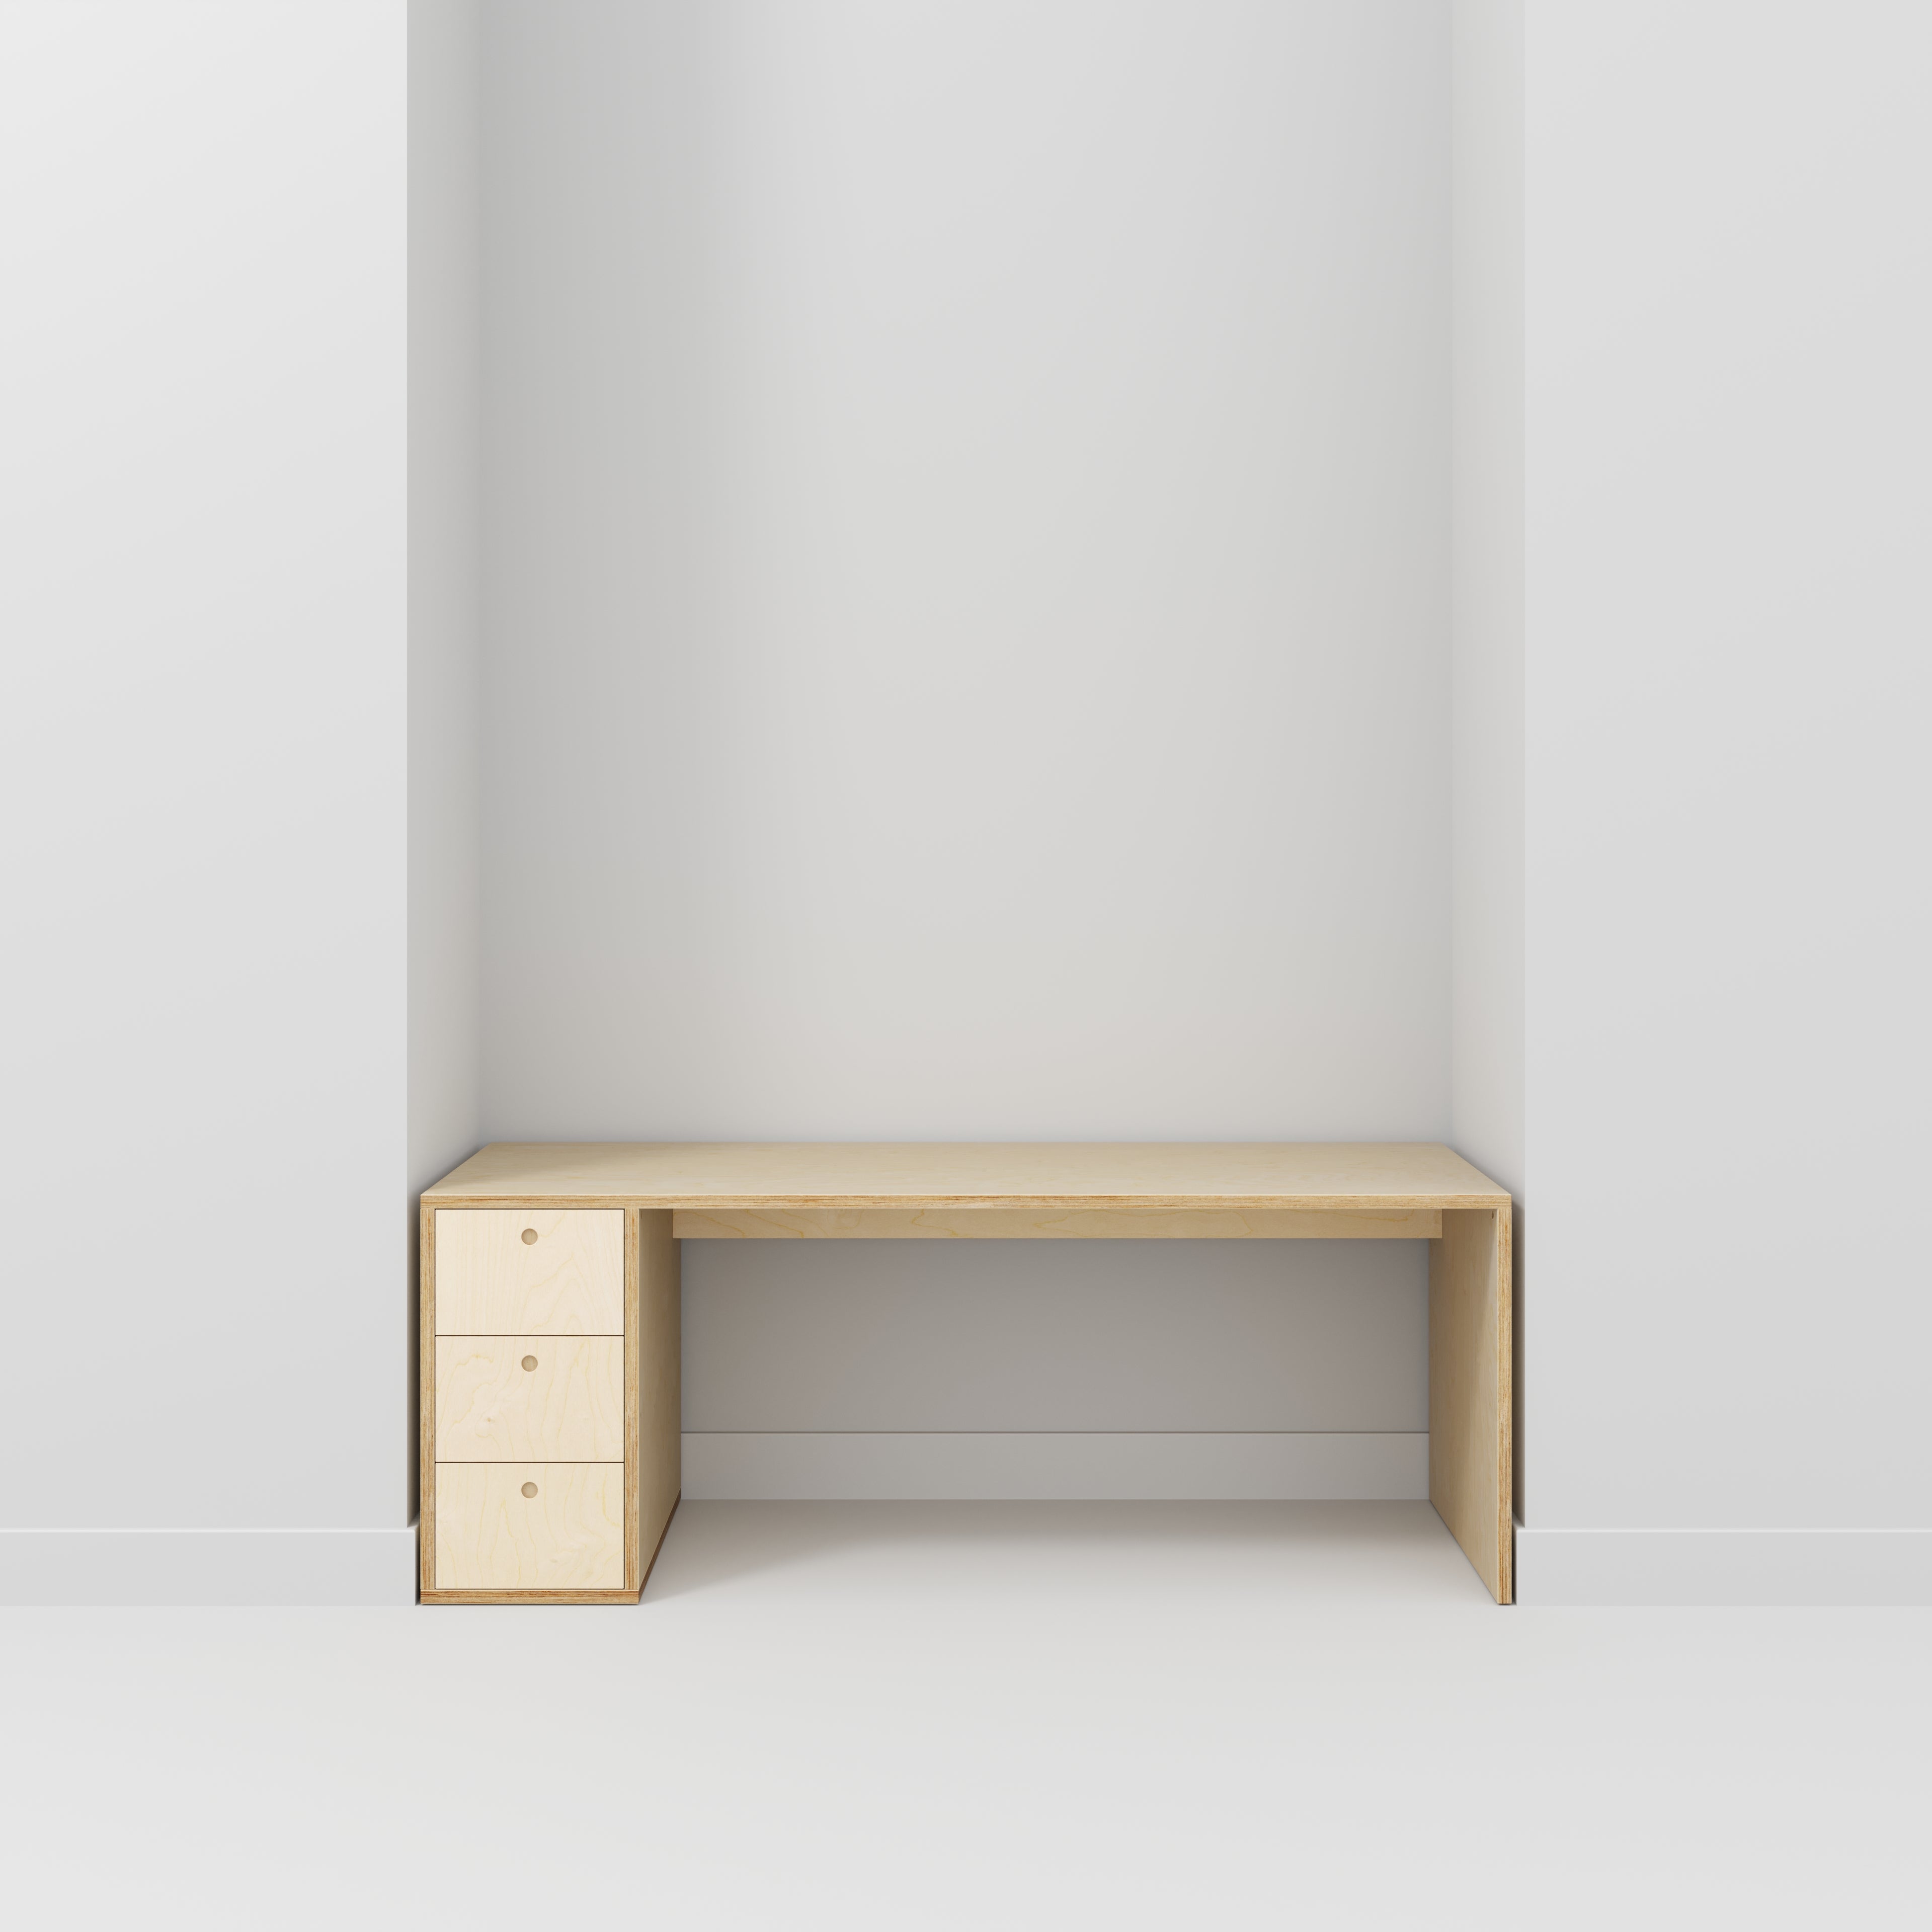 Desk with Storage Type 1 LH - Drawers - Plywood Birch - 2000(w) x 800(d) x 750(h)